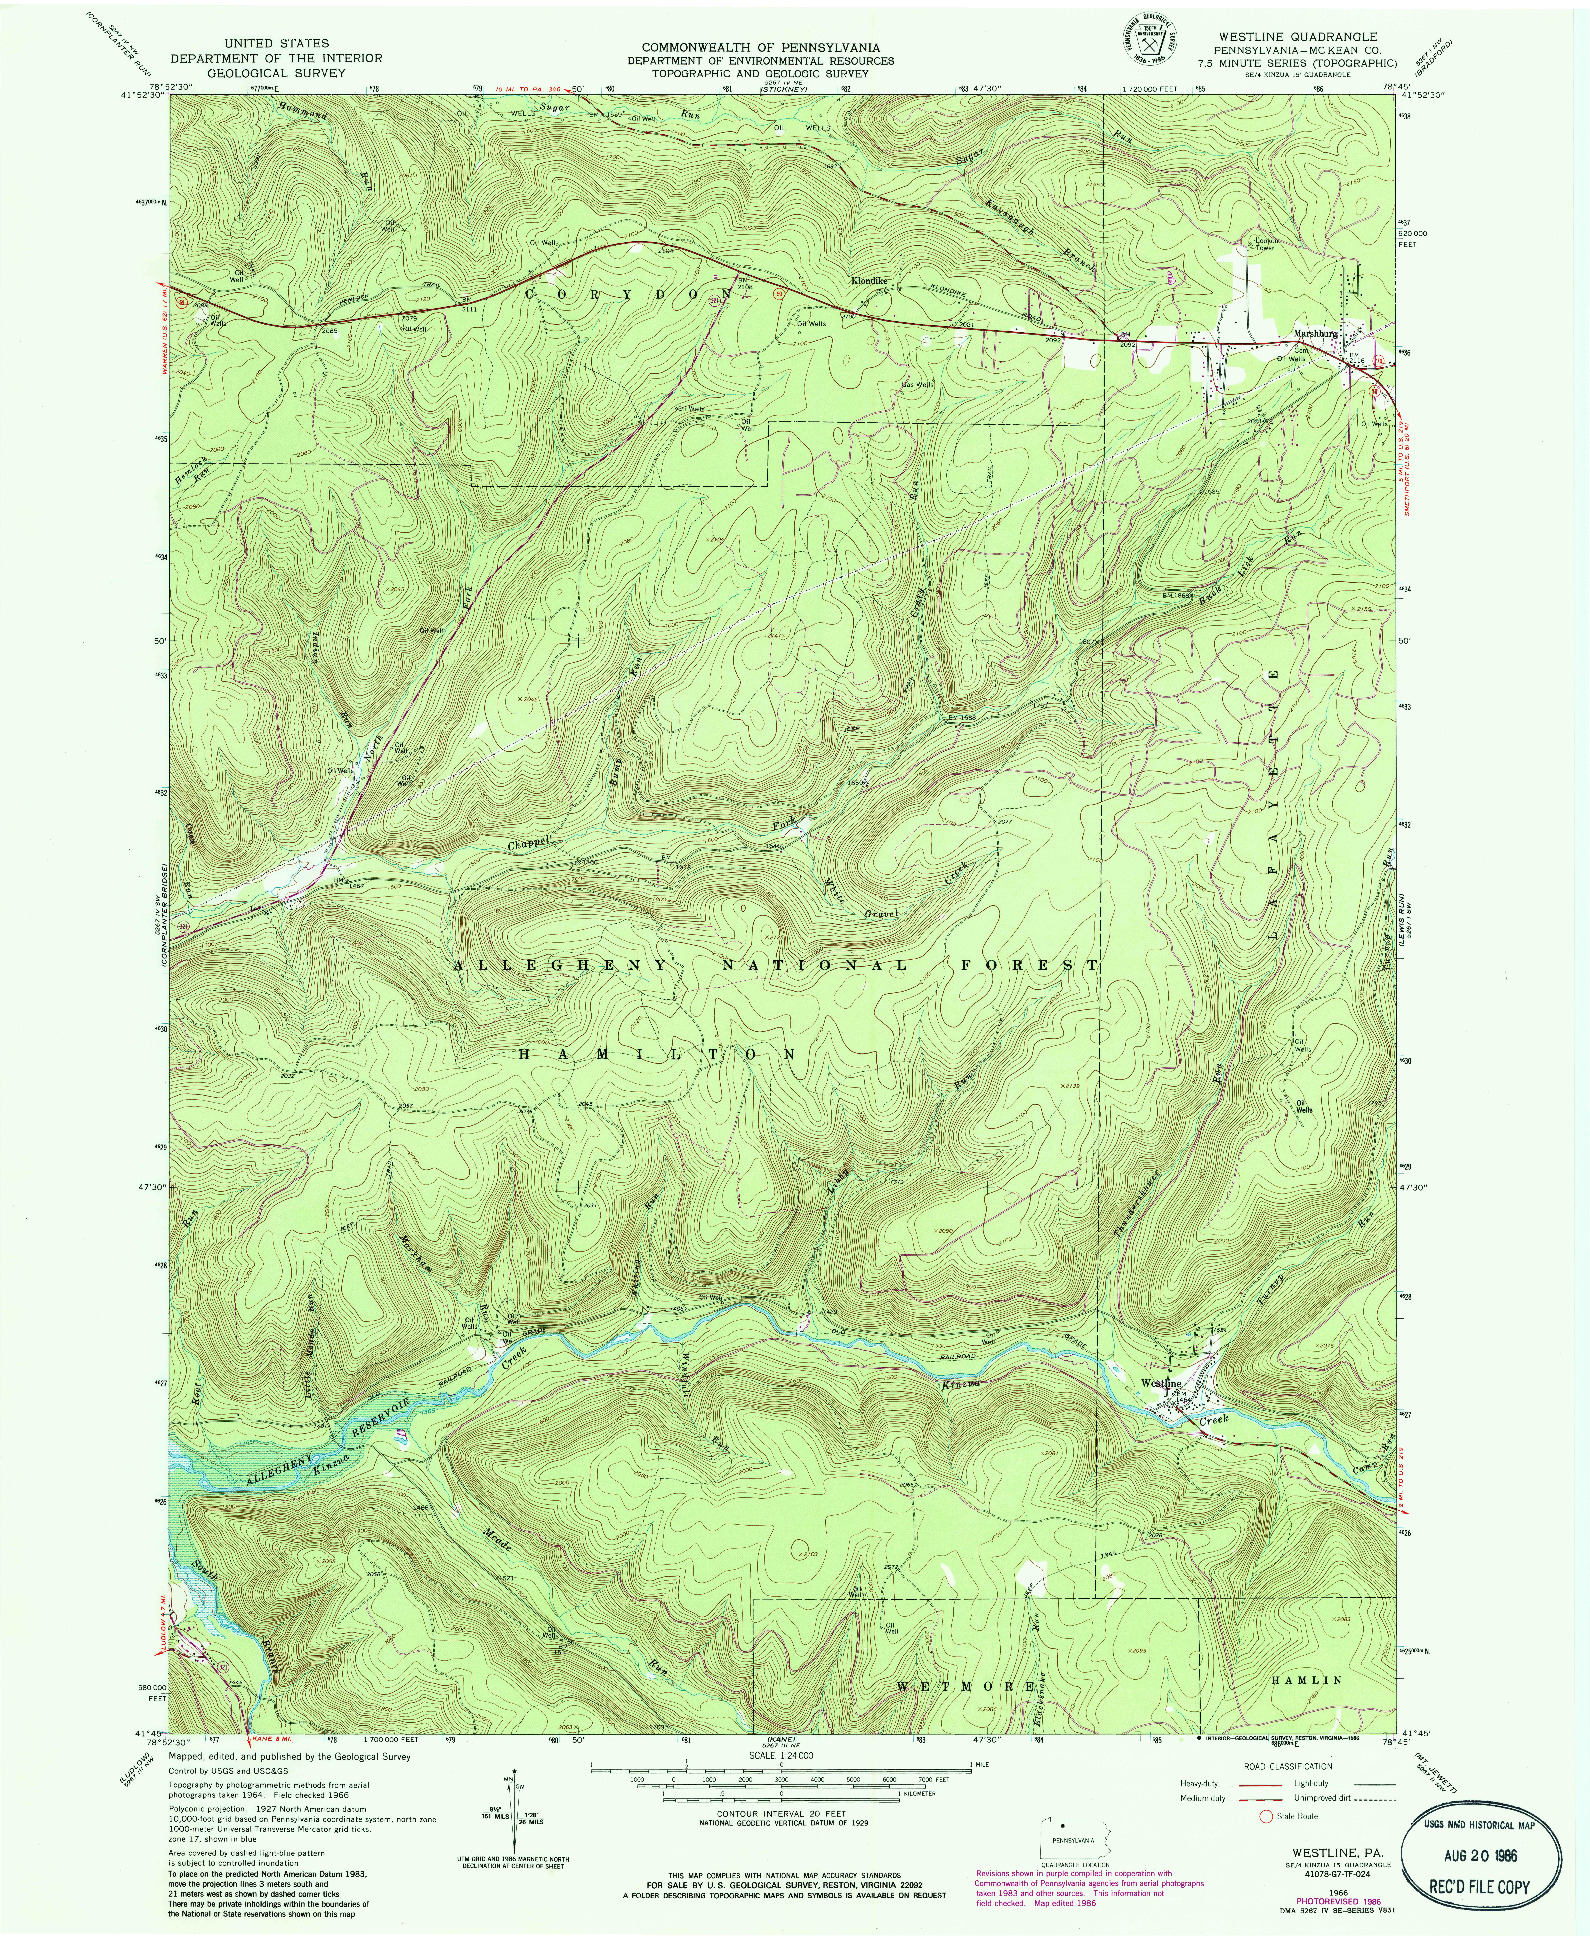 USGS 1:24000-SCALE QUADRANGLE FOR WESTLINE, PA 1966